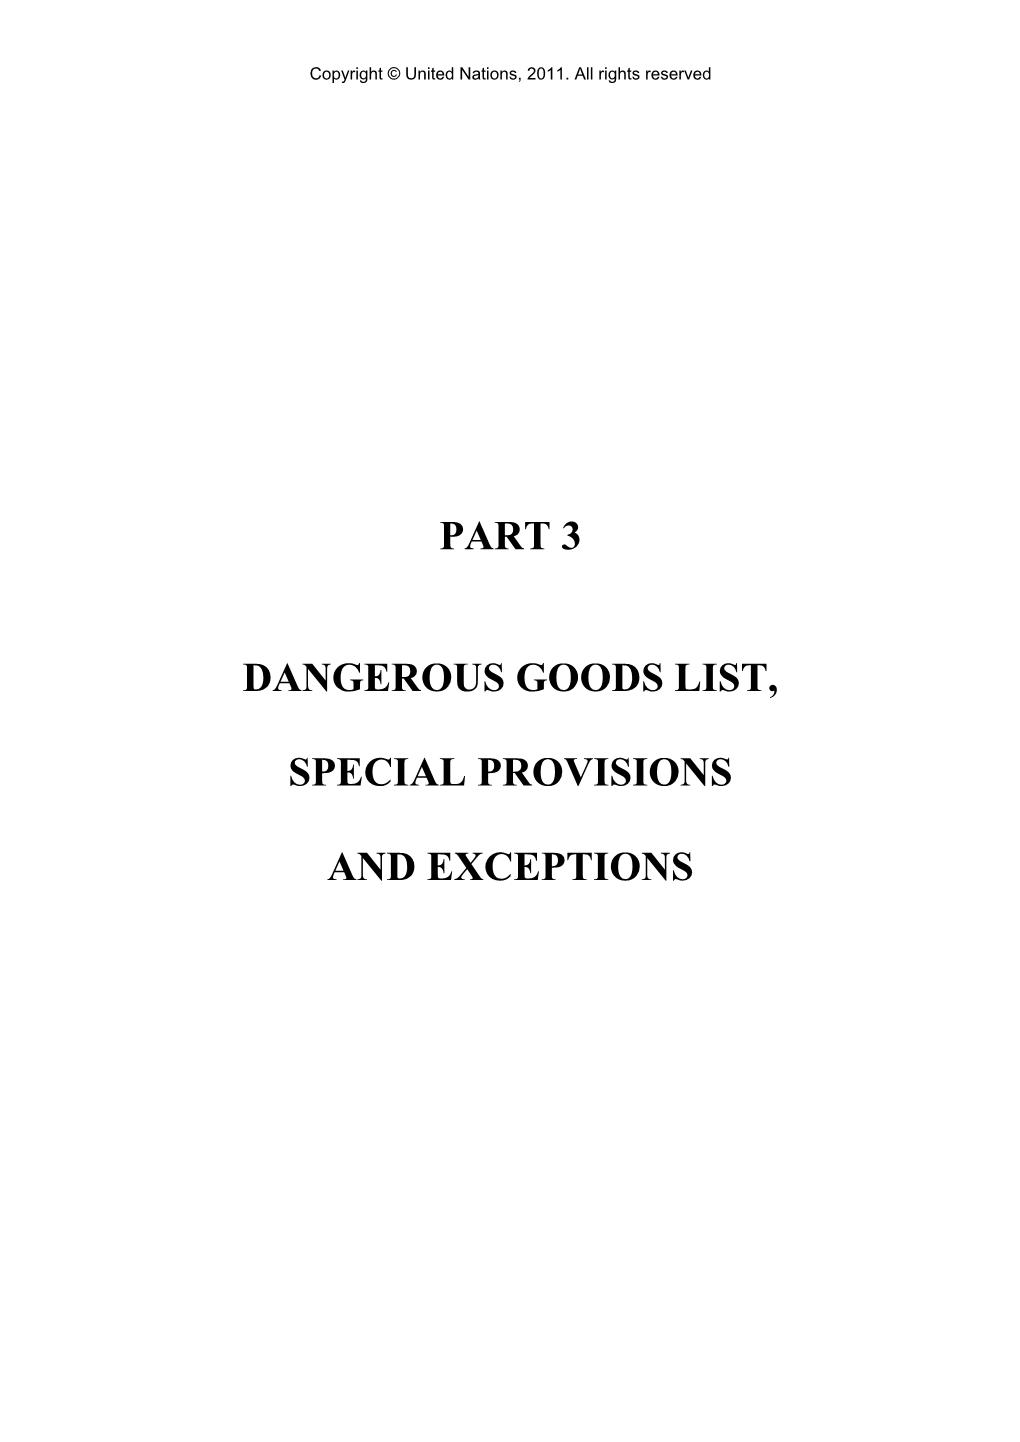 Part 3 Dangerous Goods List, Special Provisions